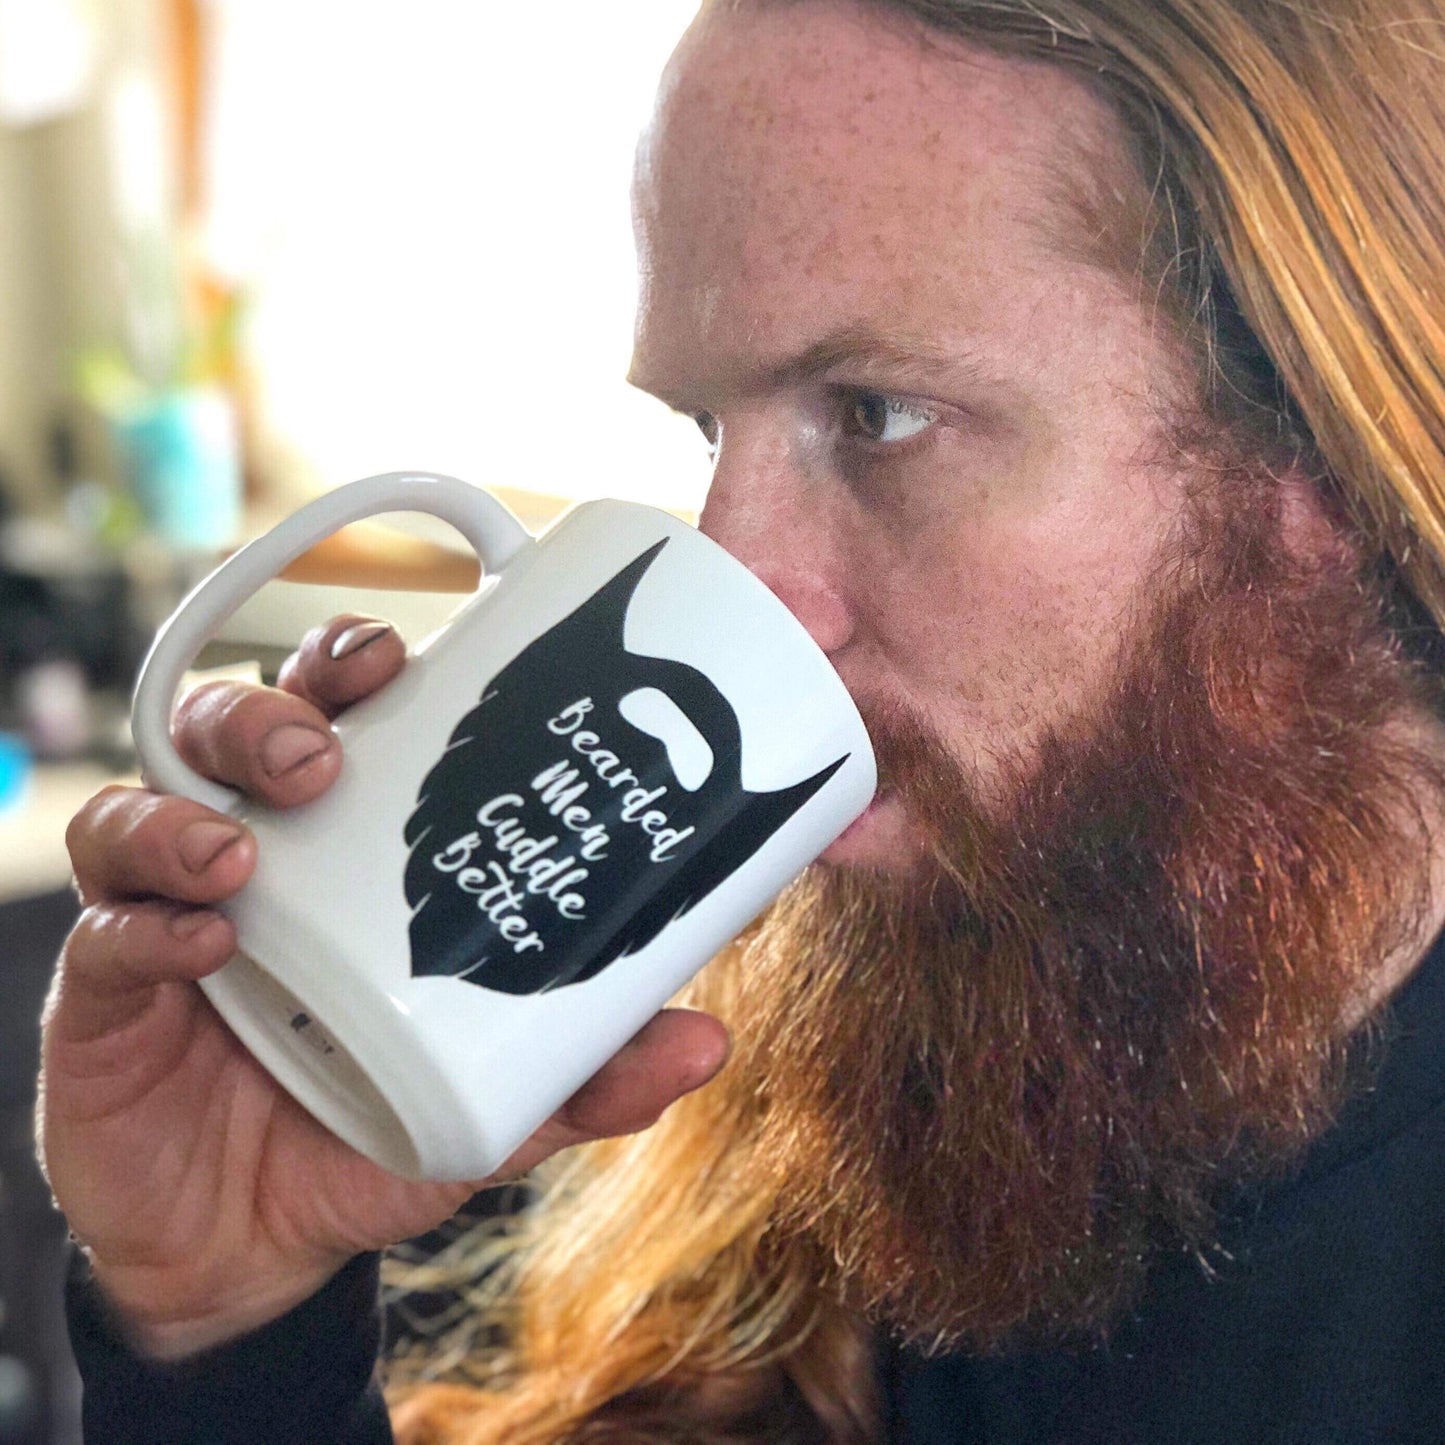 Bearded Men Cuddle Better Mug